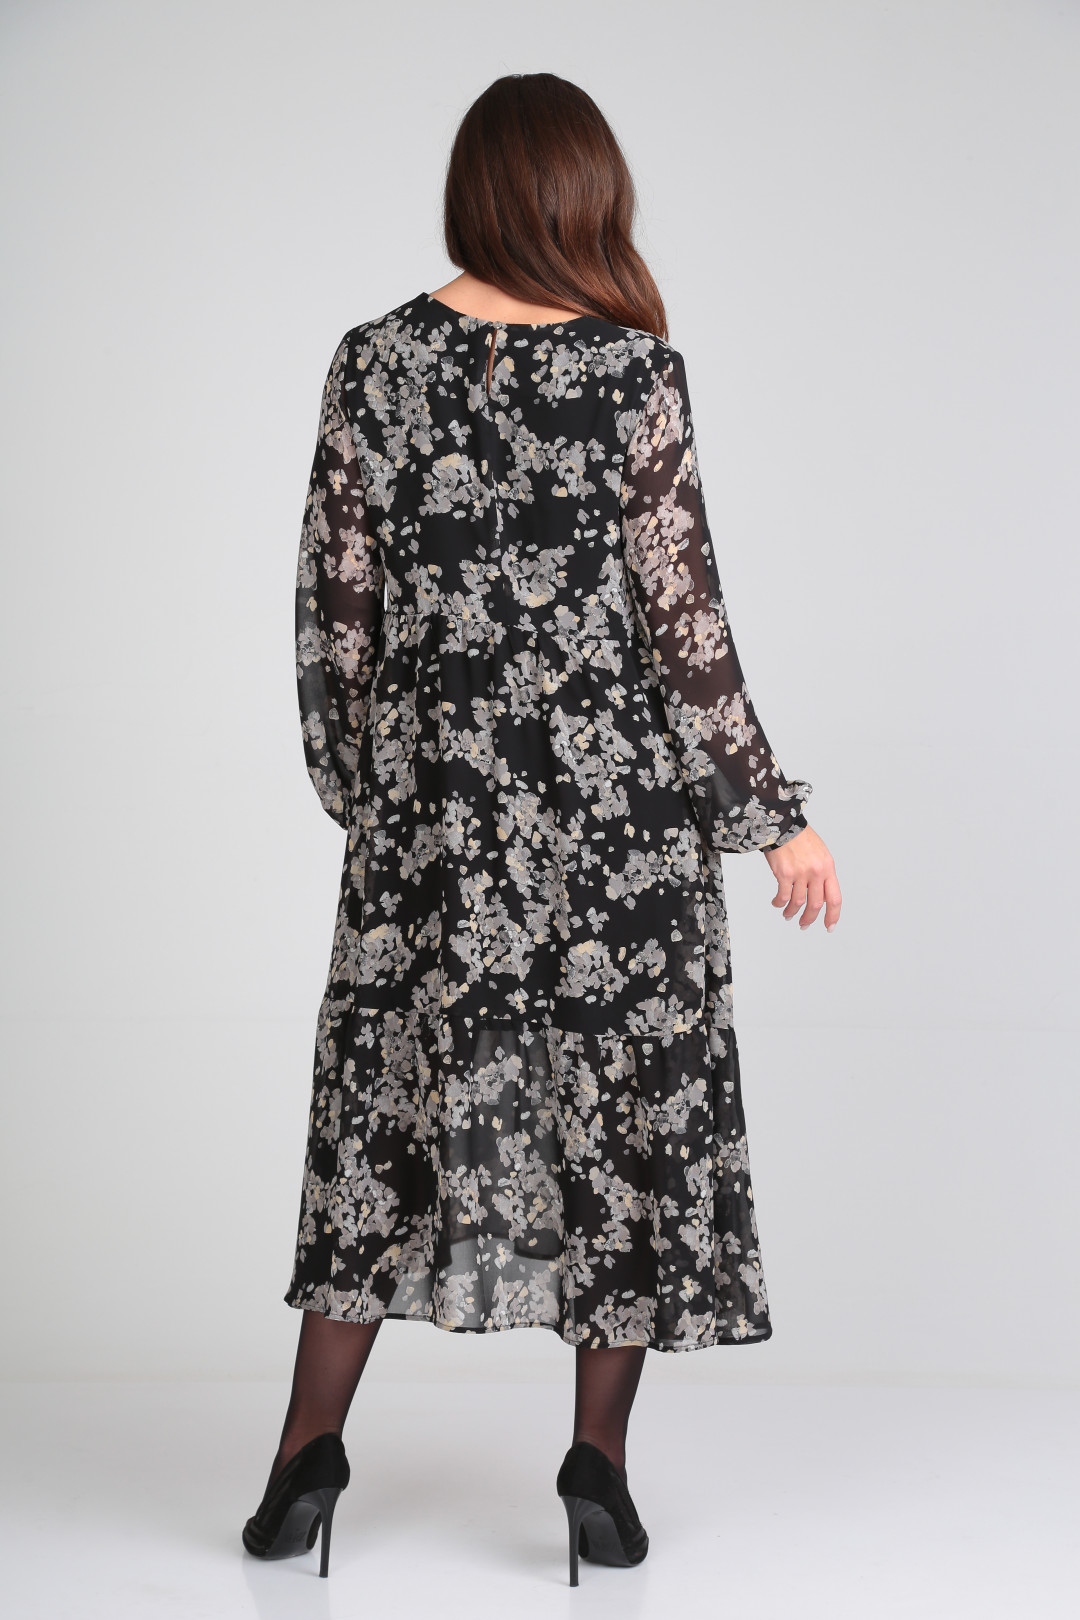 Платье Мишель Шик 2117 черный в цветочный​ принт​